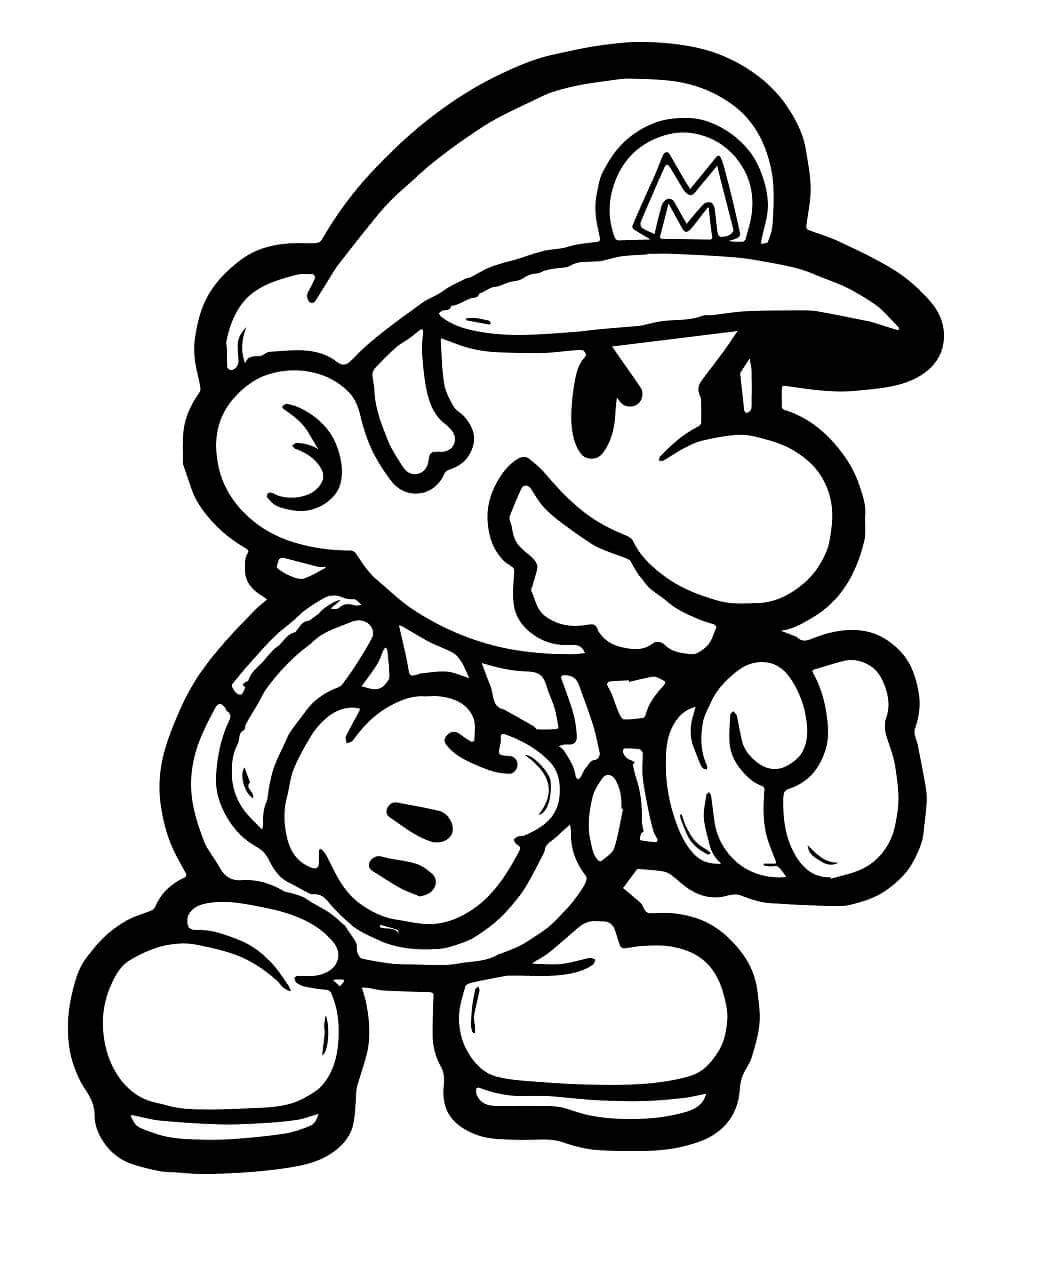 Mario Kickboxování omalovánka